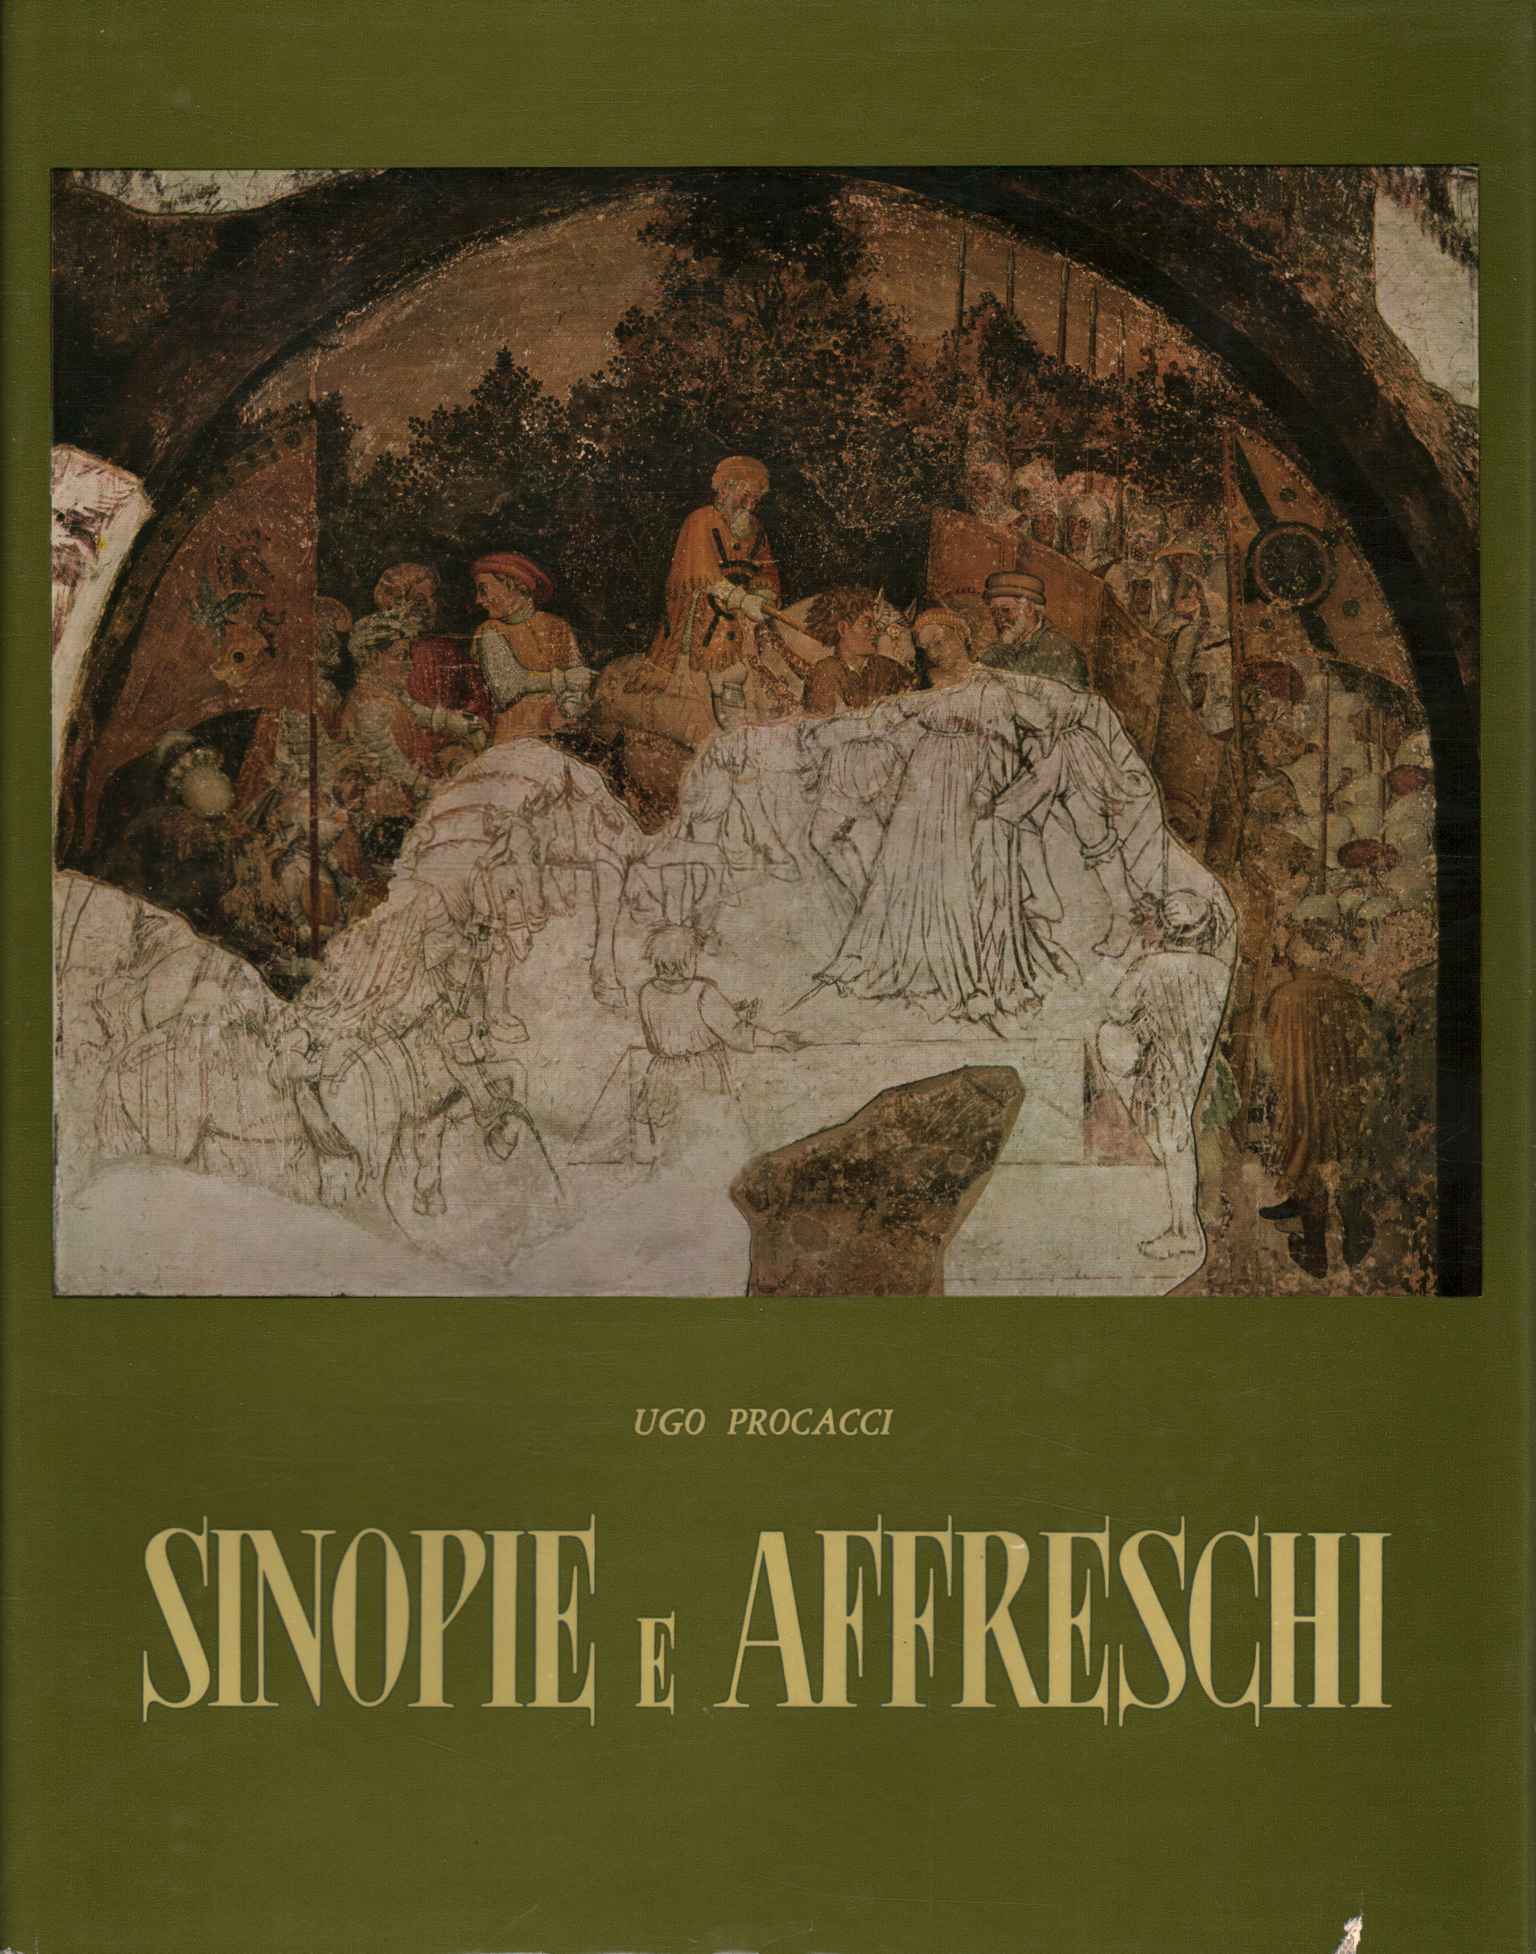 Sinopias and frescoes